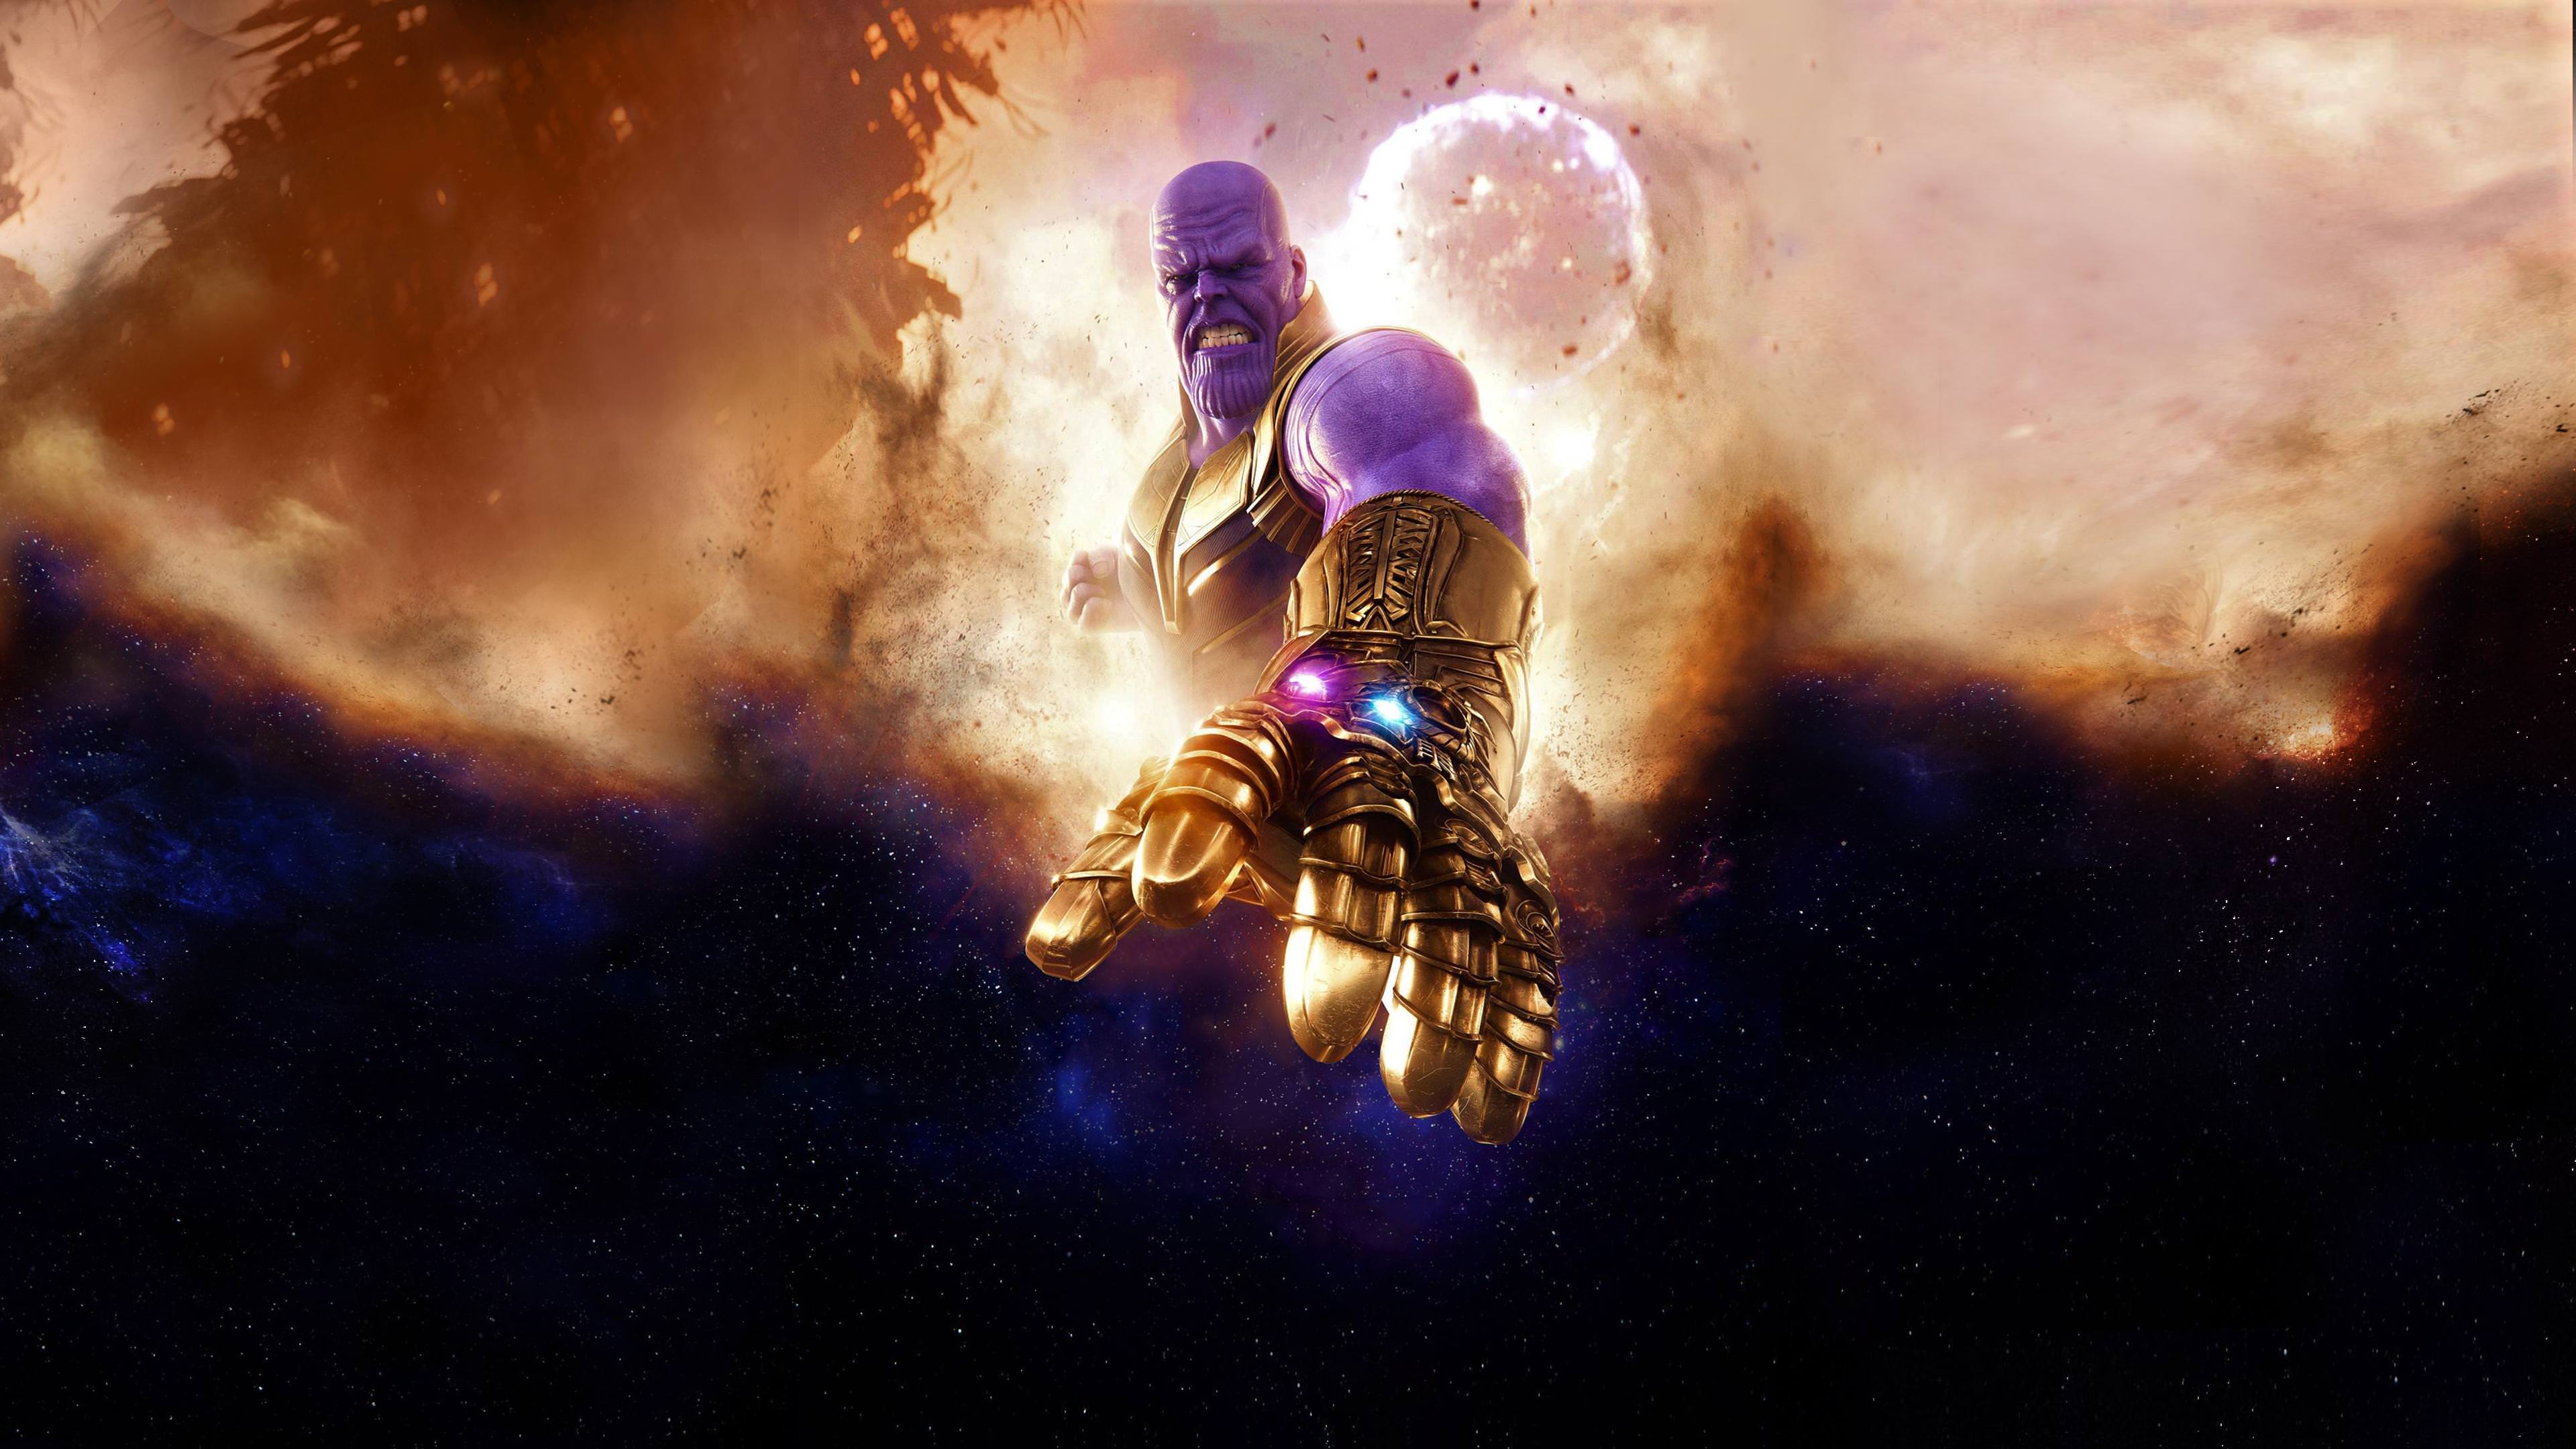 Một bức tranh tuyệt đẹp về Thanos